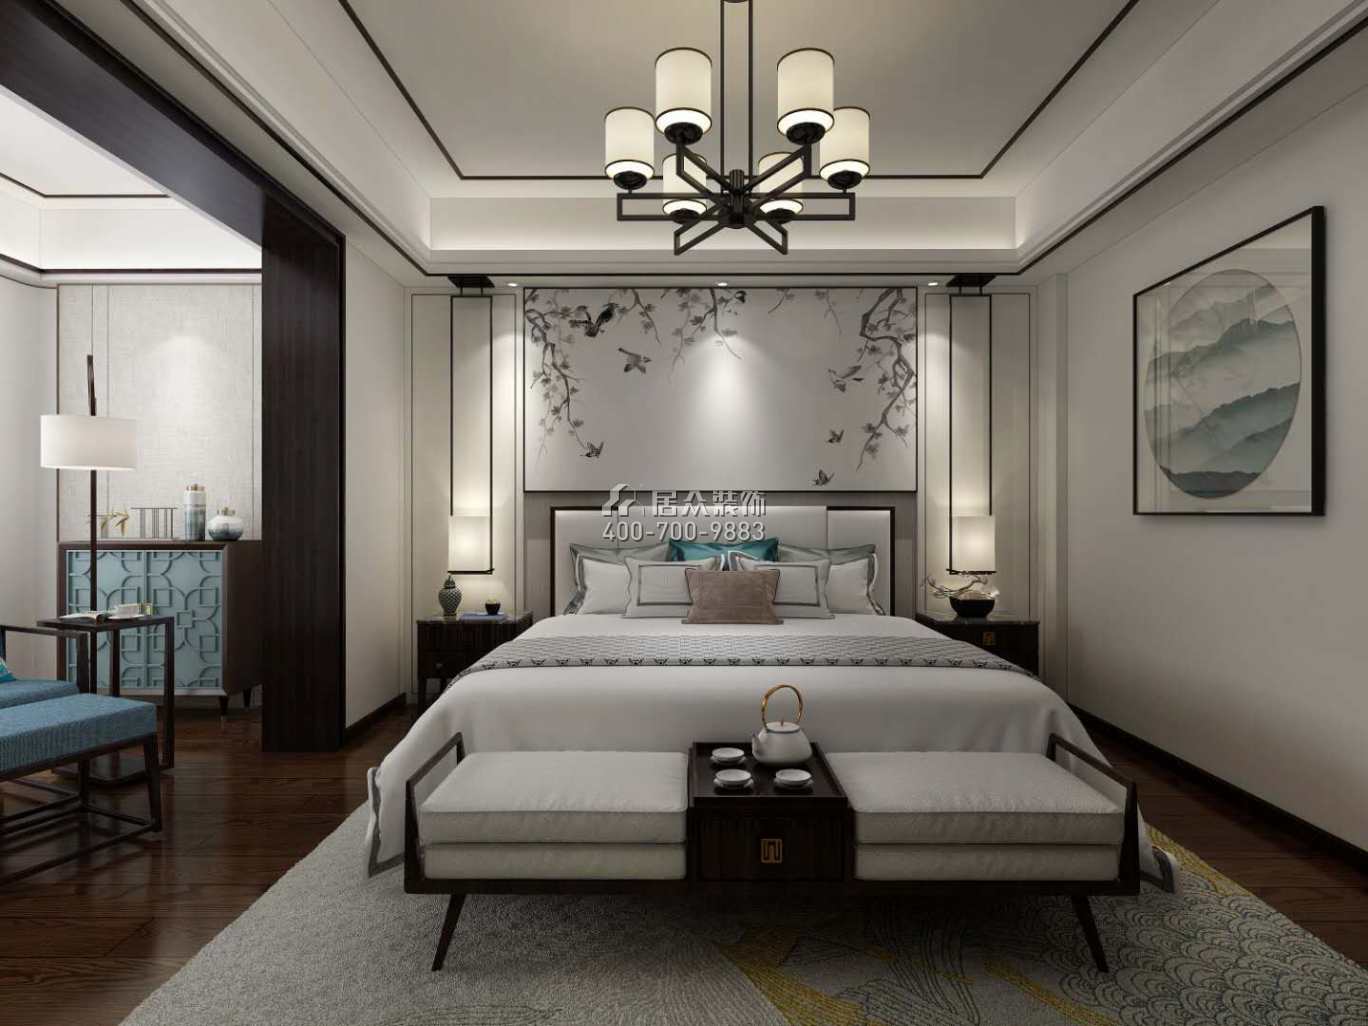 龙吟水榭500平方米中式风格别墅户型卧室装修效果图